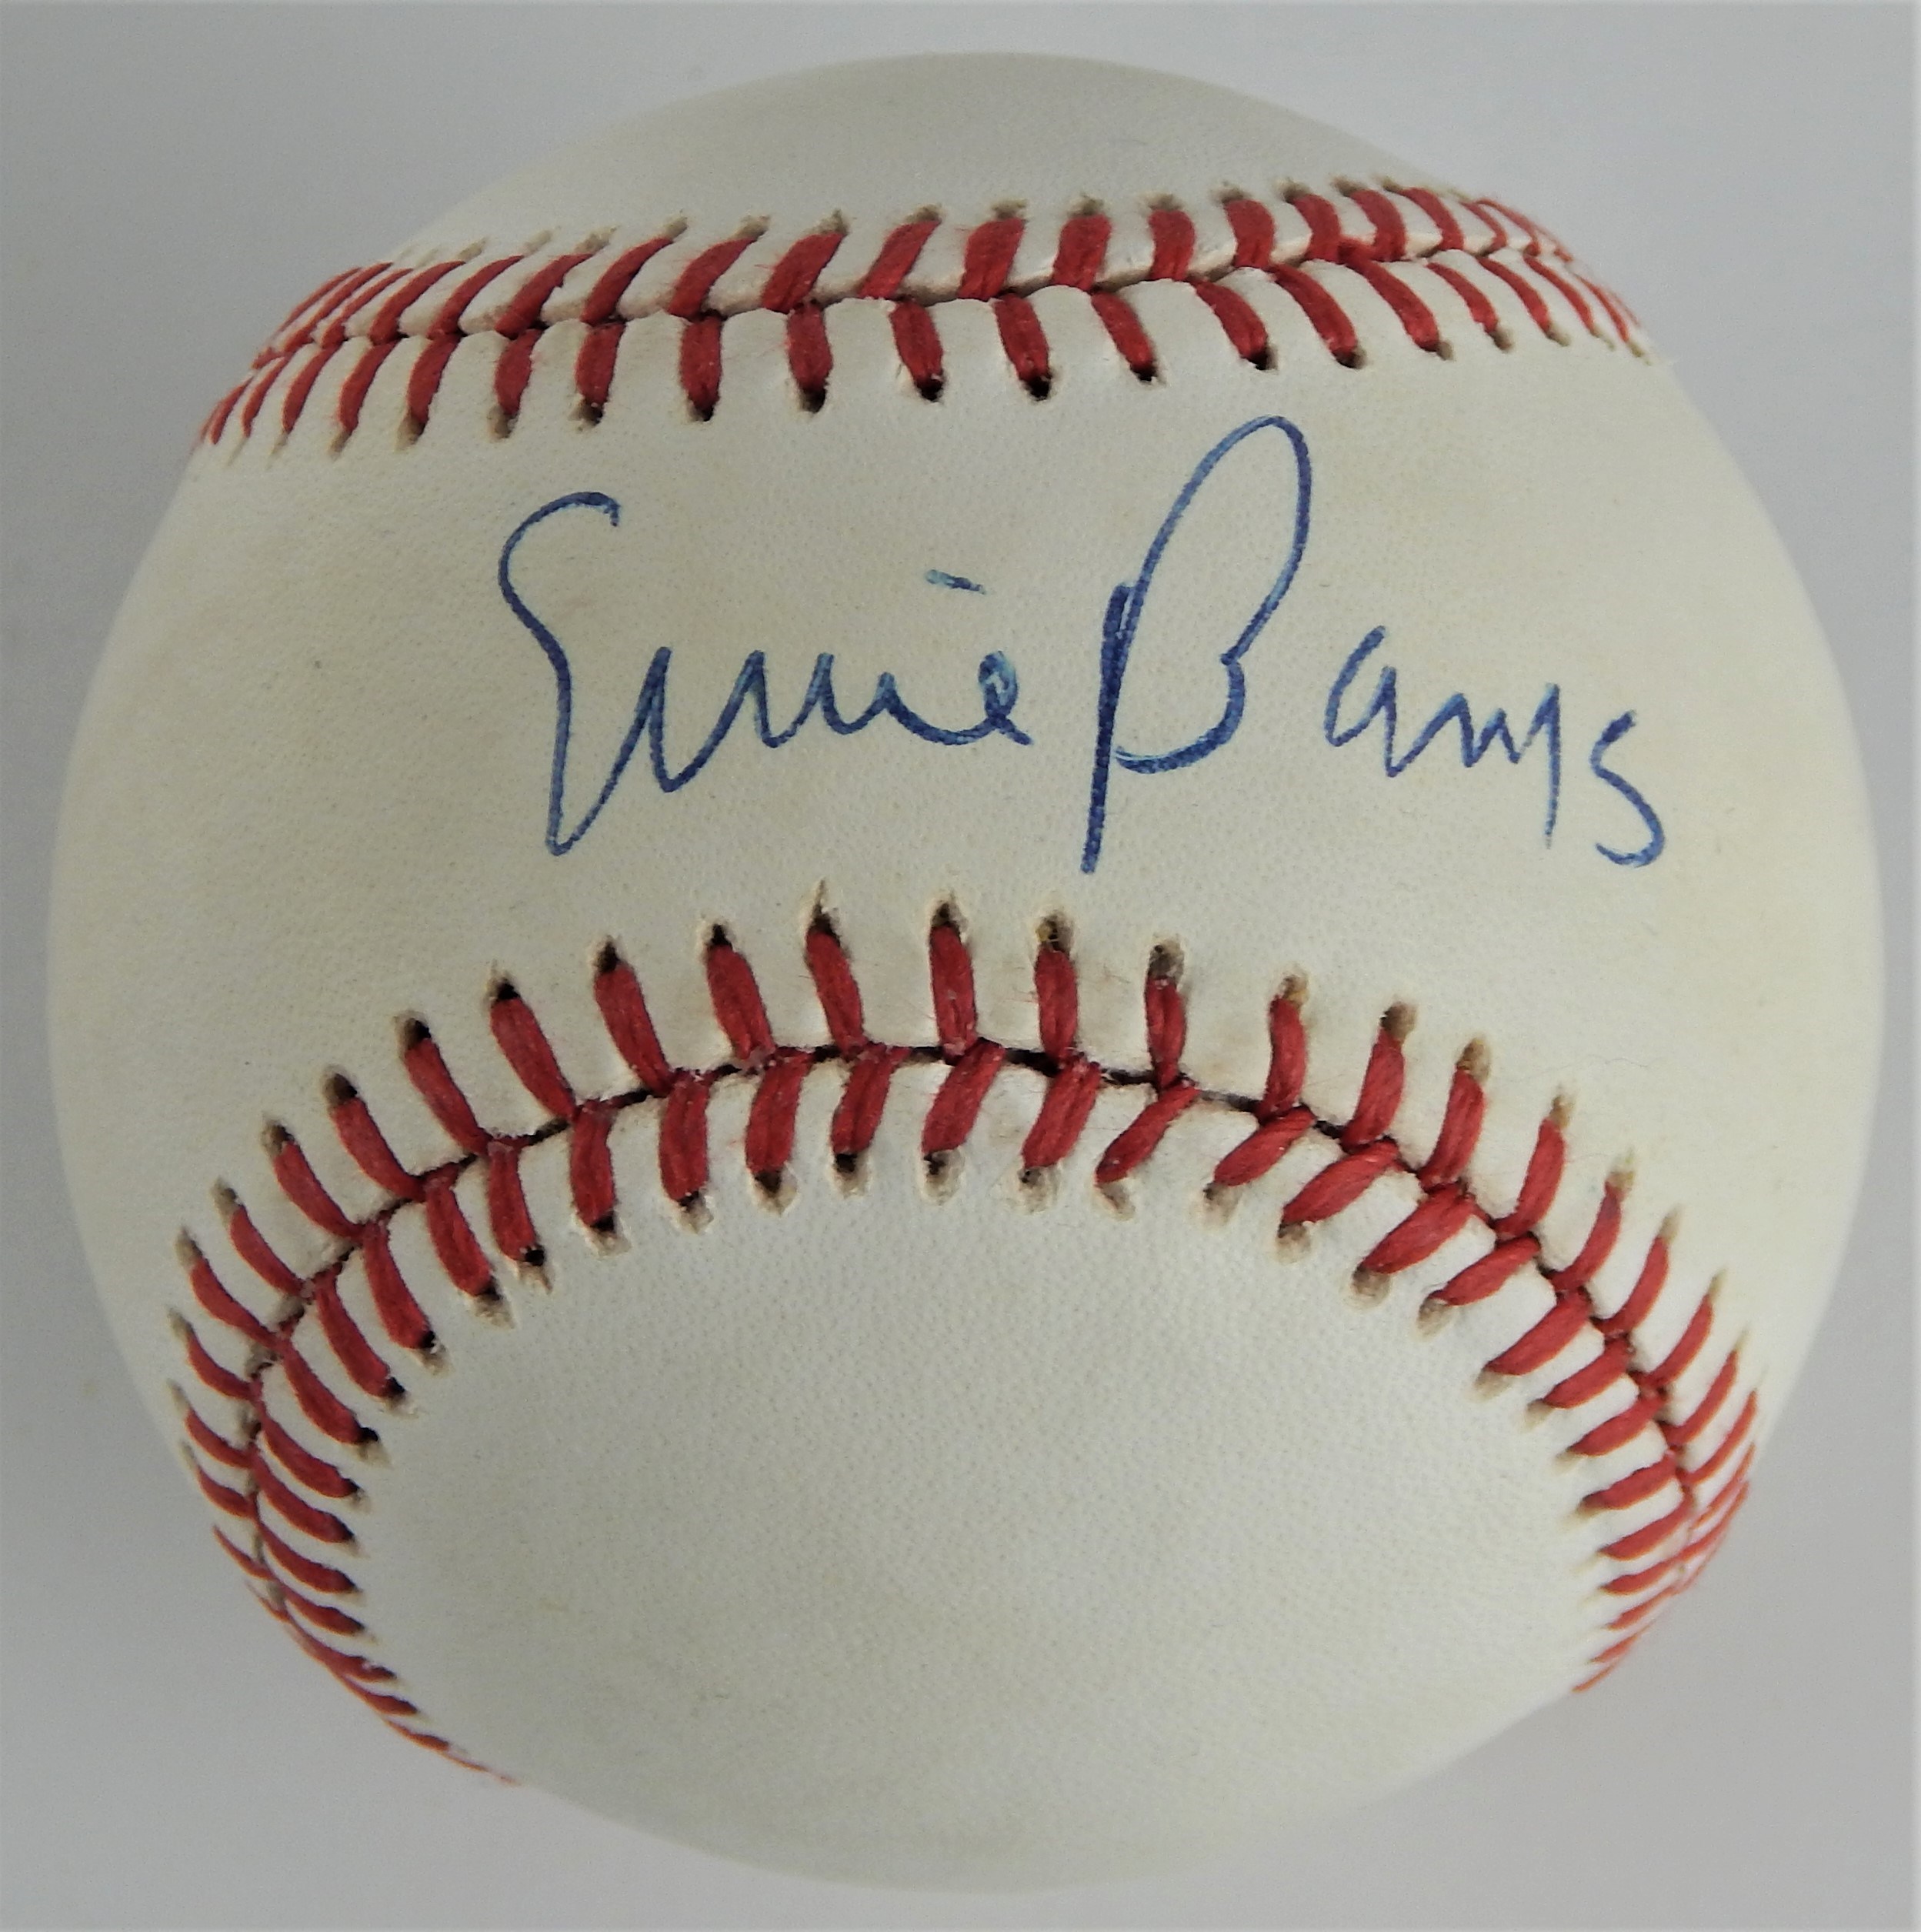 High Grade Ernie Banks Single Signed ONL Feeney Baseball